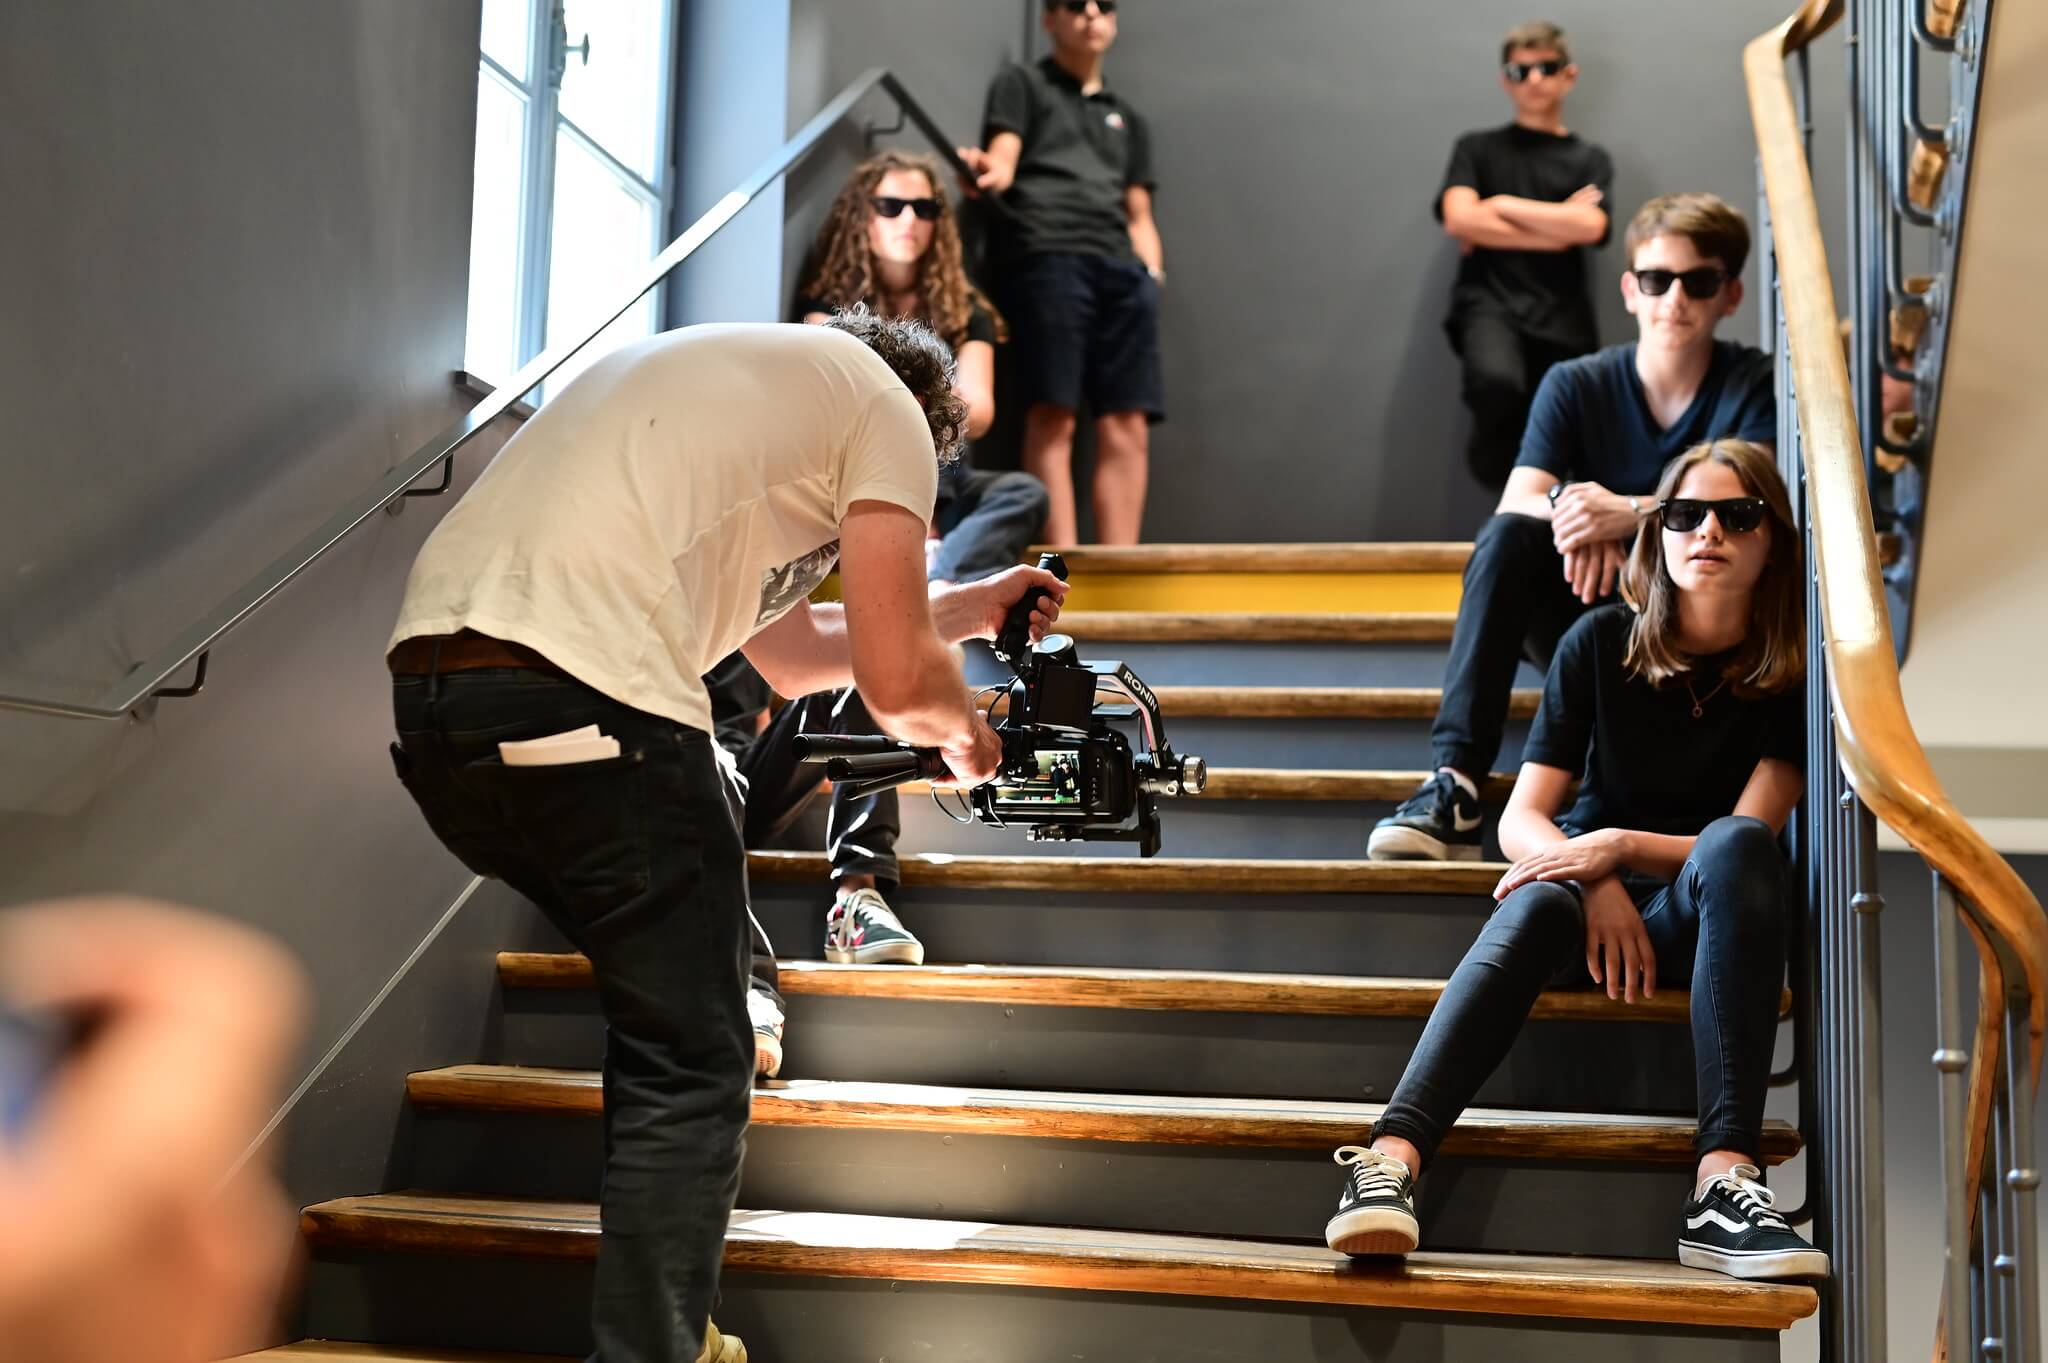 Les collégiens de l'Immaculée lors du tournage d'un clip vidéo avec le groupe Metro Verlaine